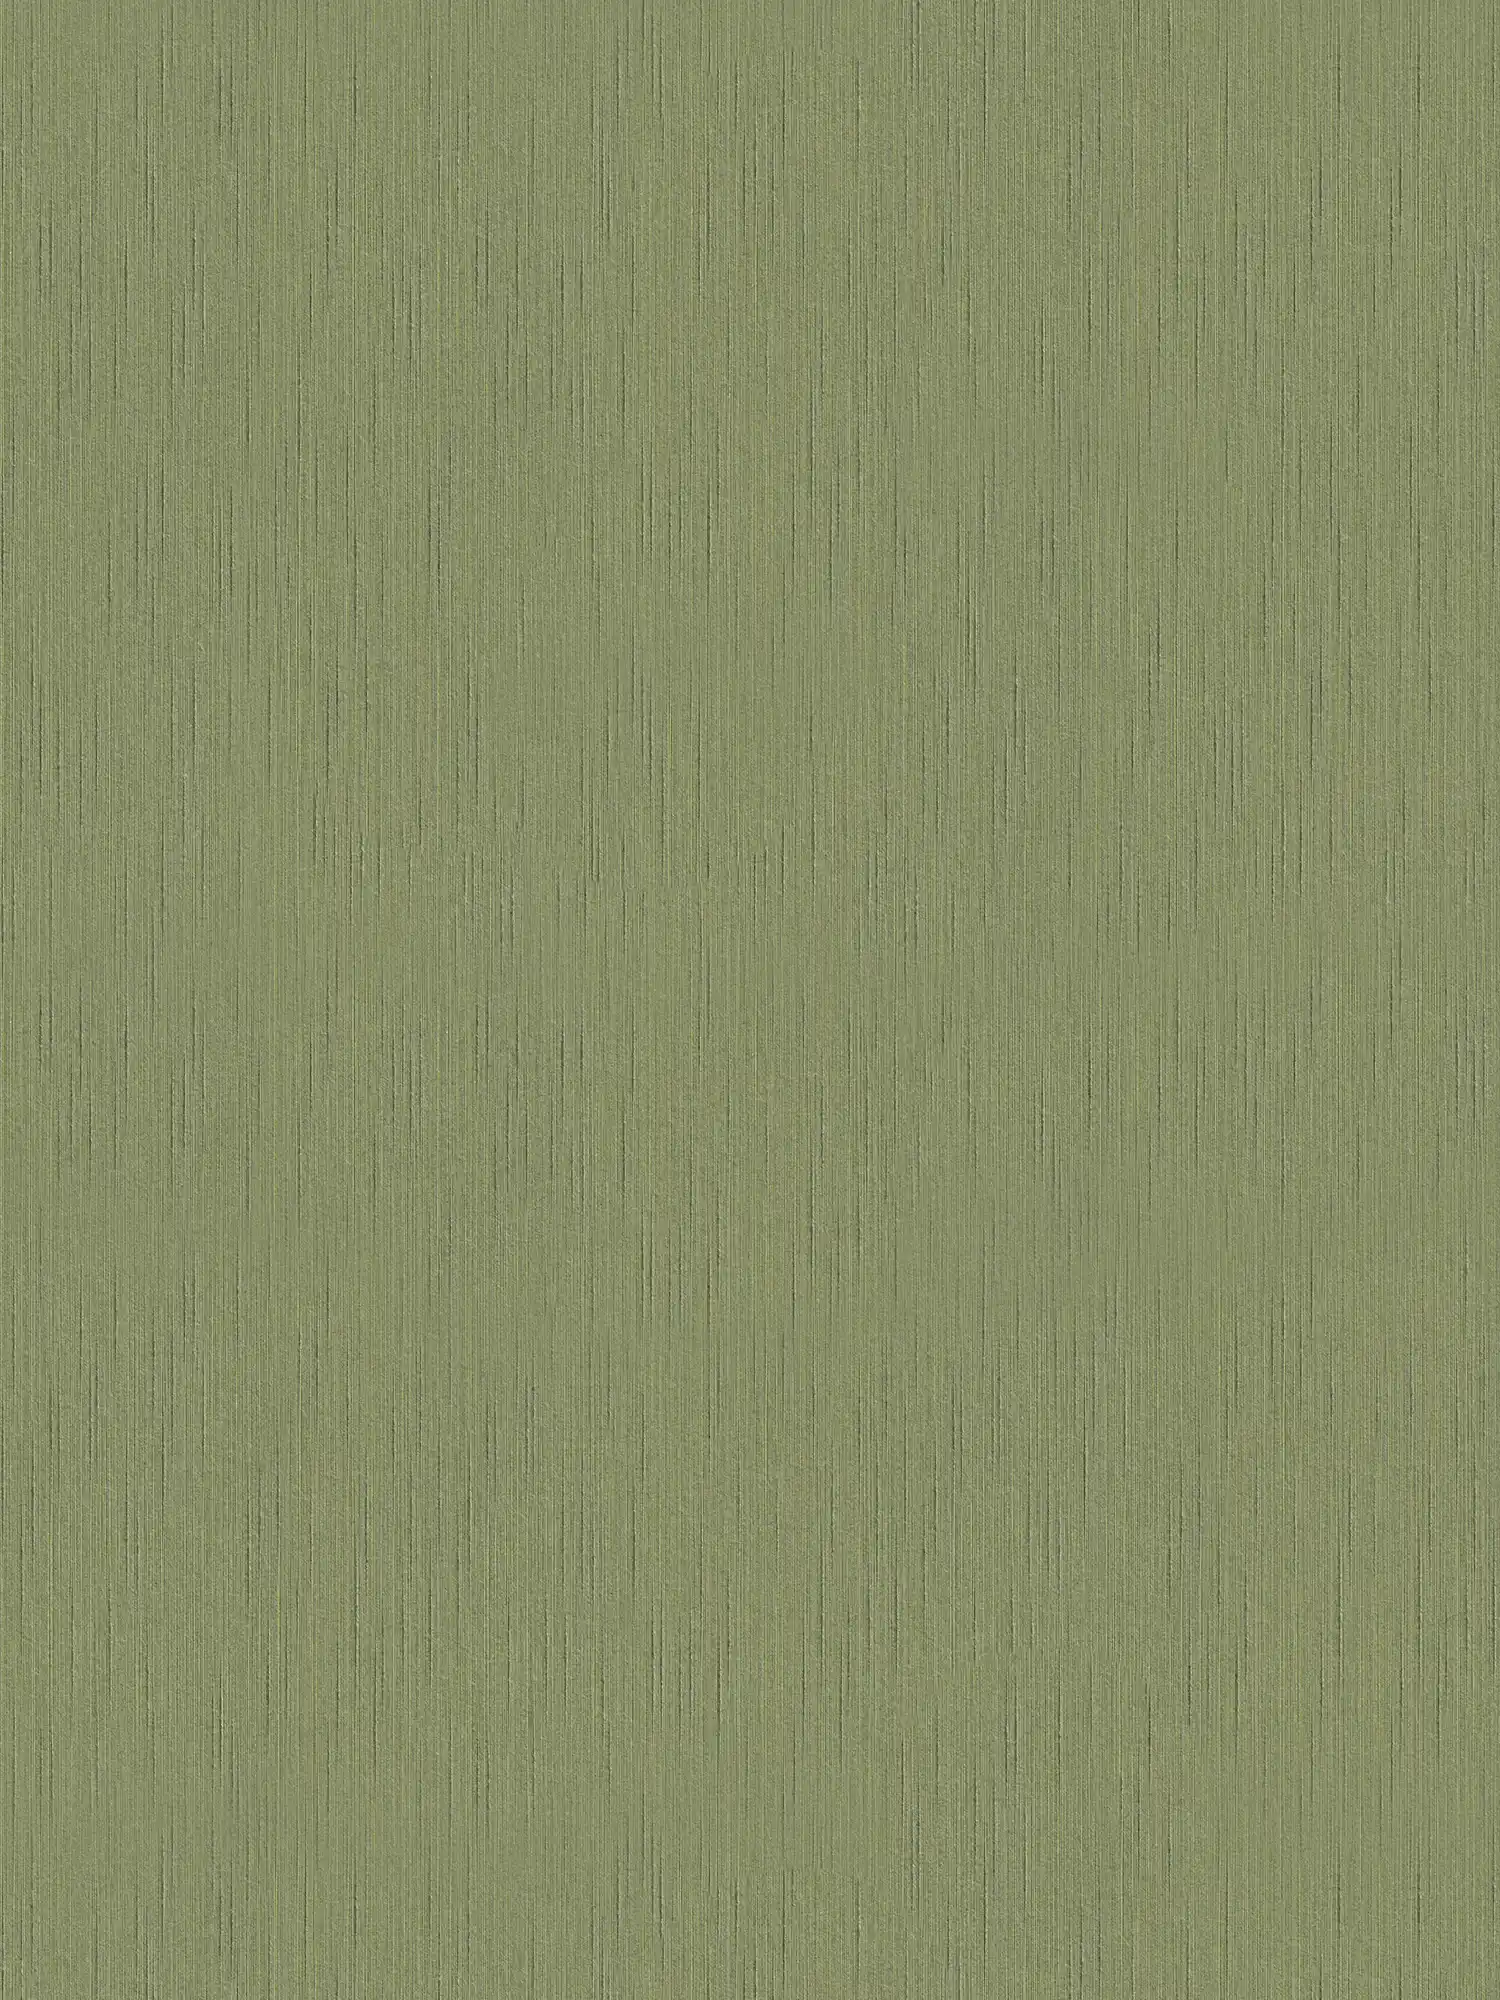 Carta da parati in tessuto non tessuto verde scuro con struttura a chiazze - verde
